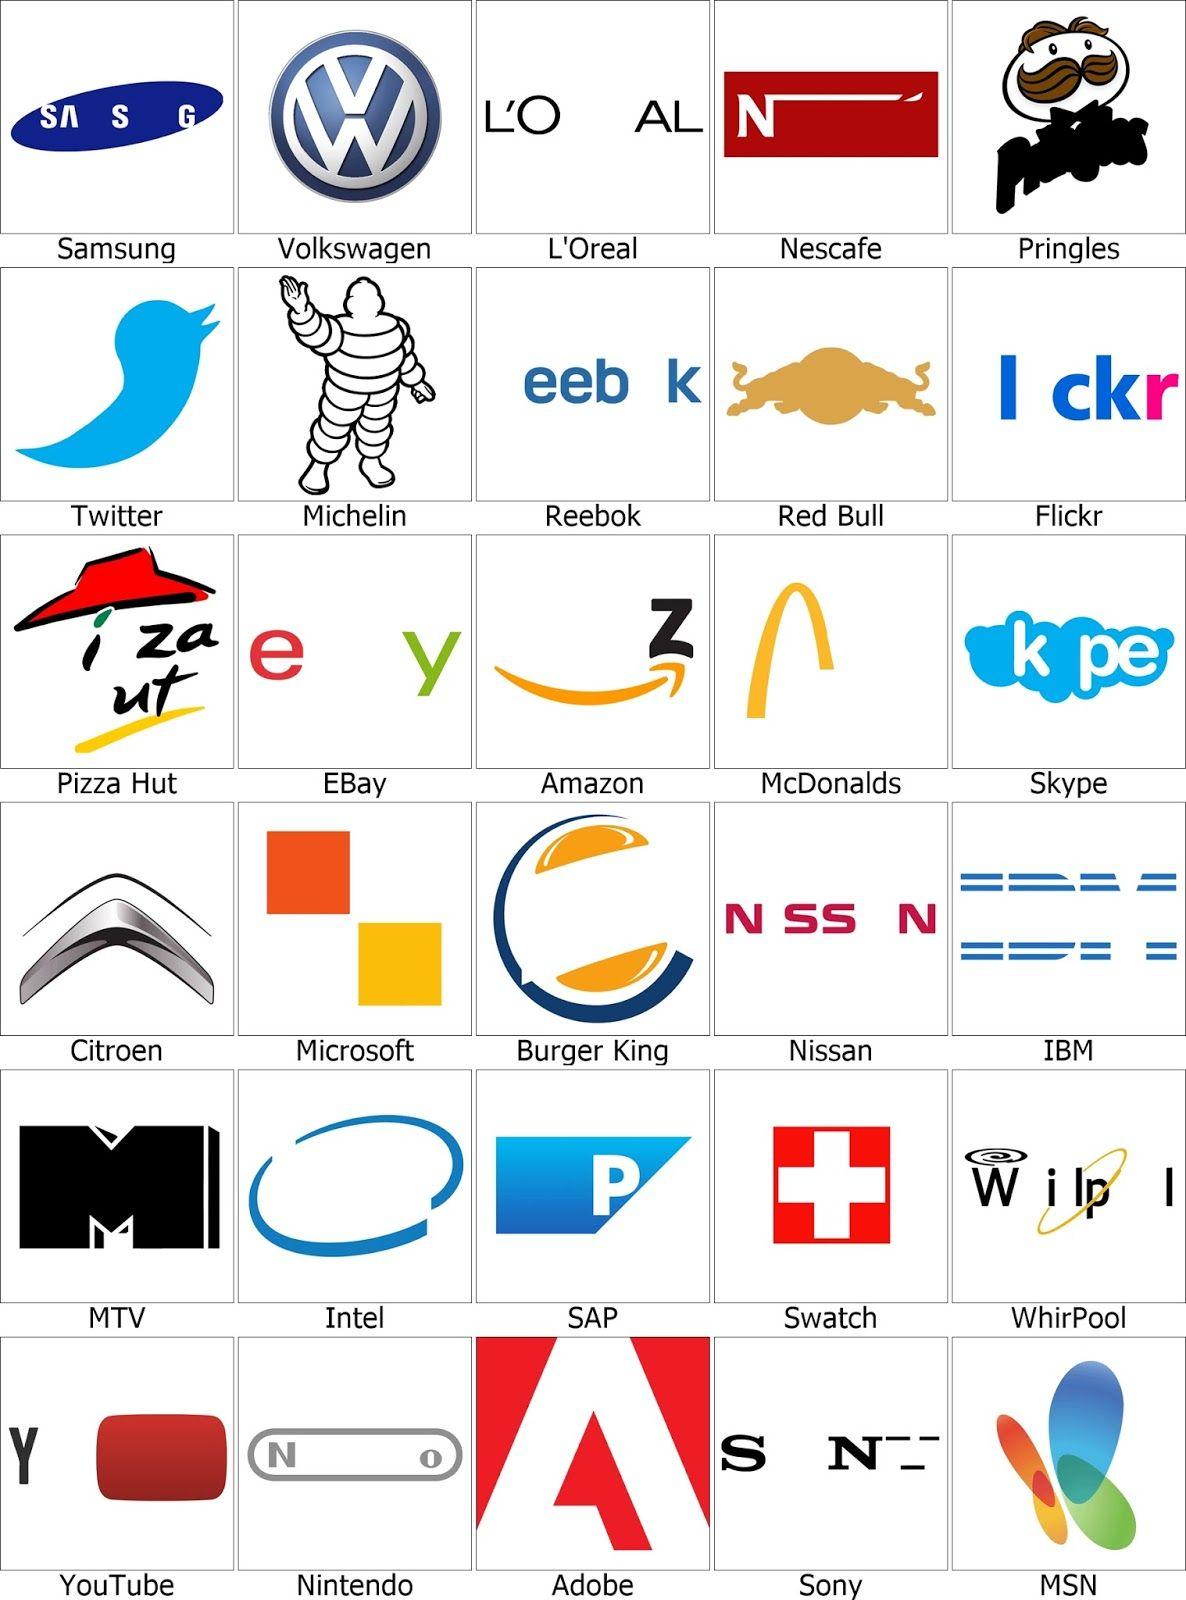 Japanese Electronics Logo - Japanese consumer electronics companies Logos